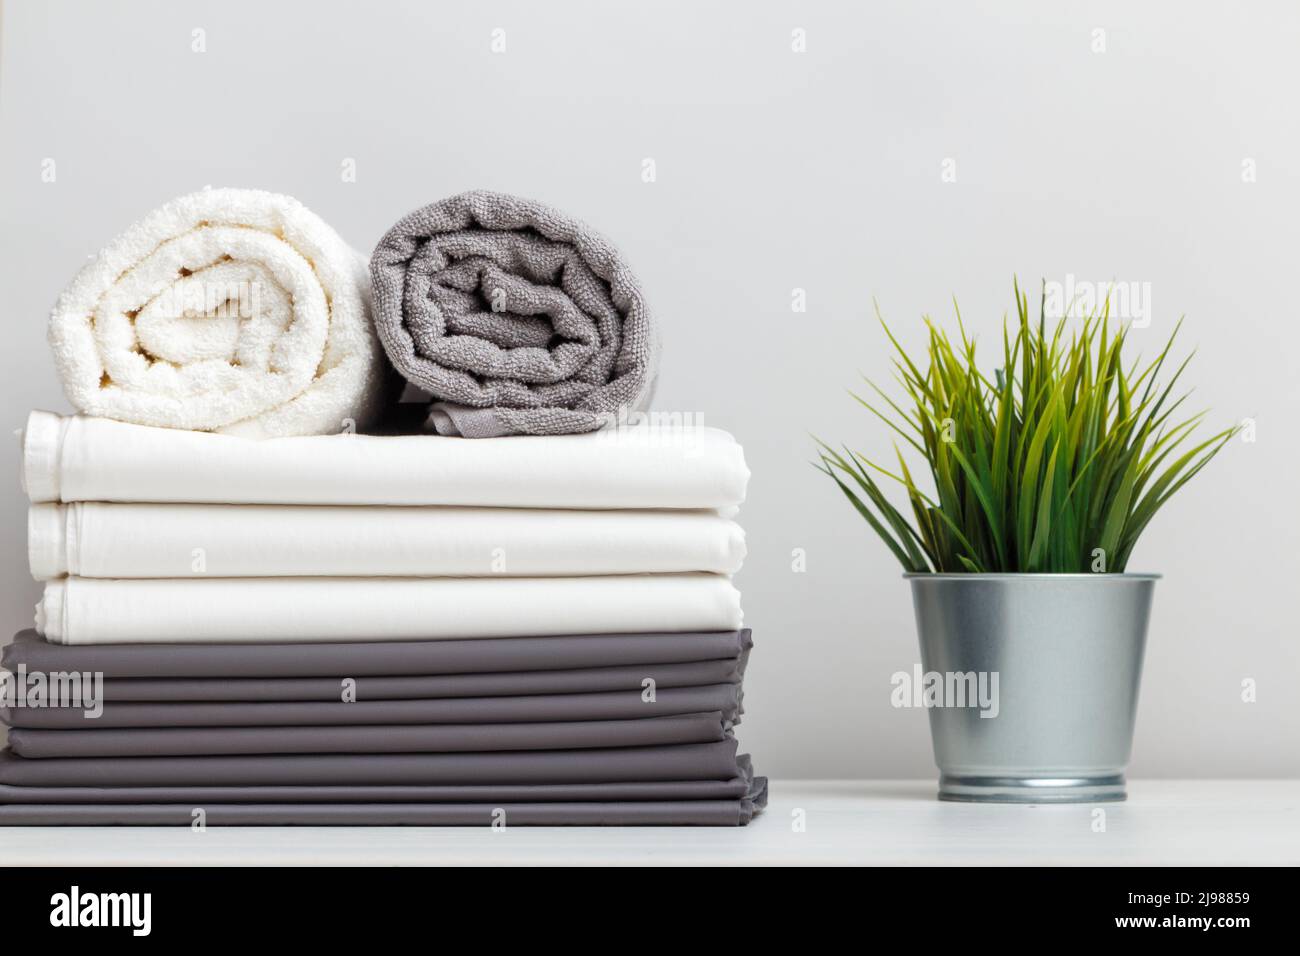 Ein Stapel grauer und weißer Bettwäsche, Bettwäsche und eine gefaltete Rolle Handtücher, eine Pflanze in einem Topf auf einem Tisch. Stockfoto